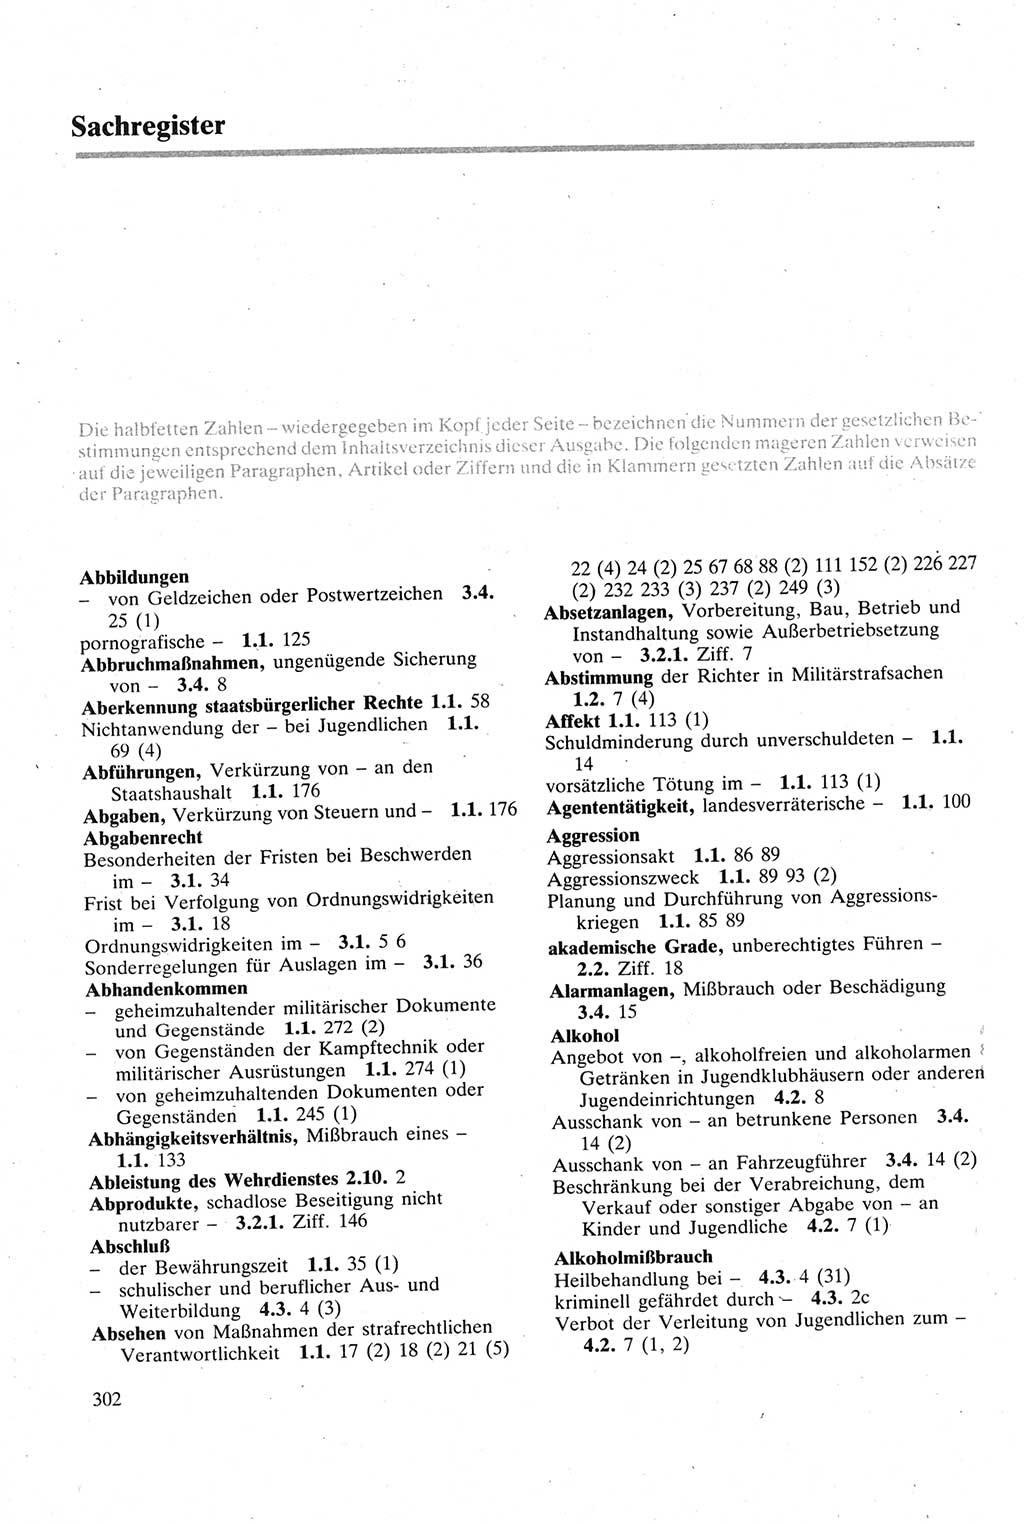 Strafgesetzbuch (StGB) der Deutschen Demokratischen Republik (DDR) sowie angrenzende Gesetze und Bestimmungen 1979, Seite 302 (StGB DDR Ges. Best. 1979, S. 302)